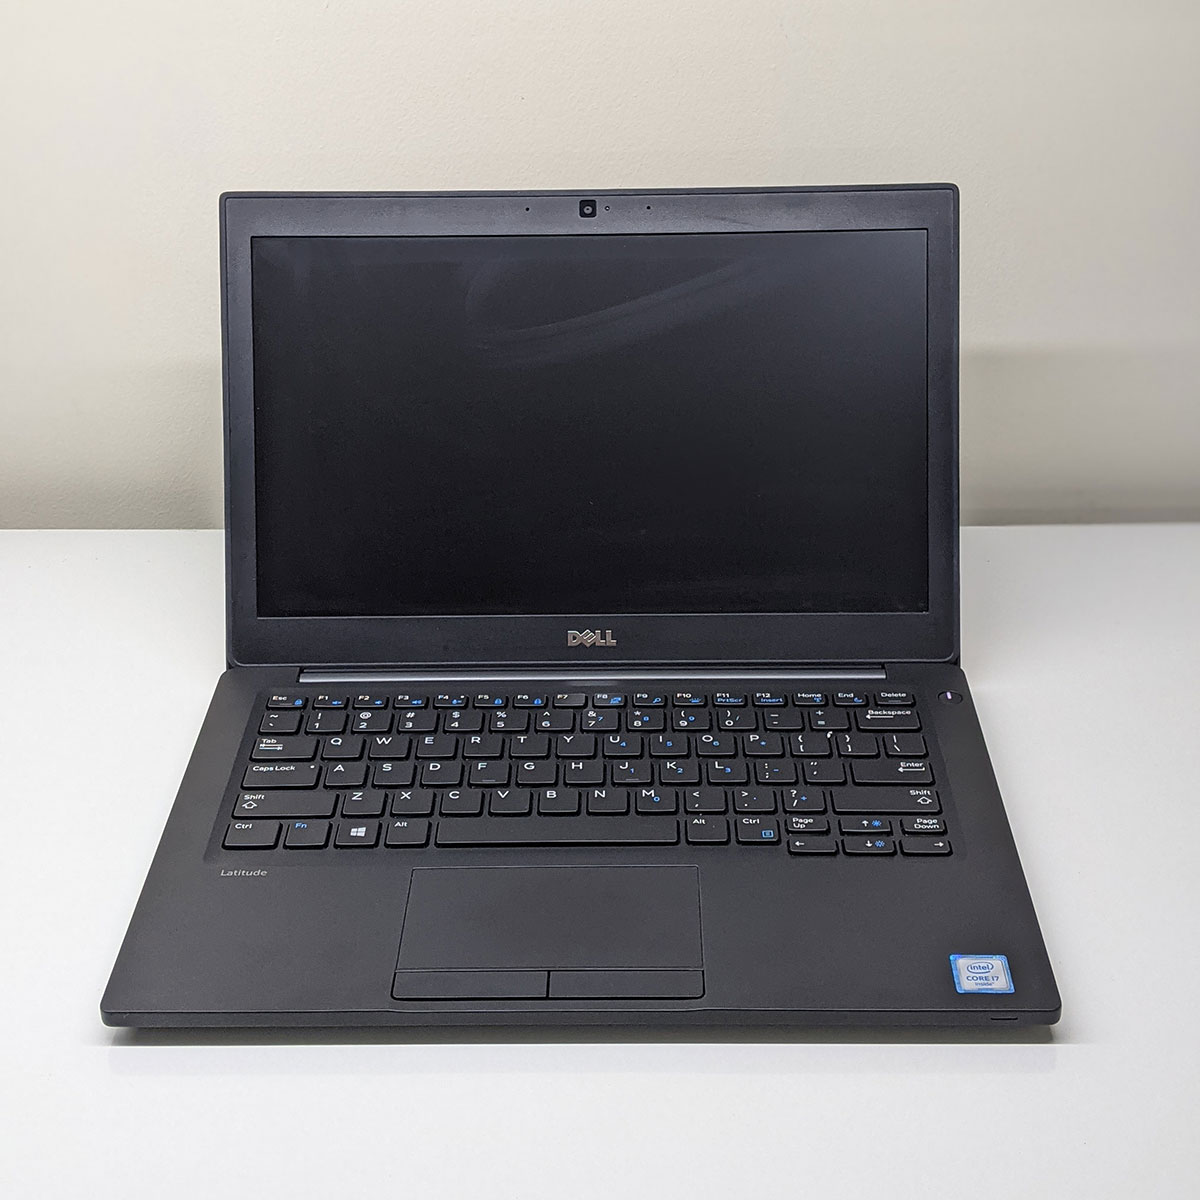 Laptop cũ Dell Latitude 7280 Core i7 6600u nhập Mỹ, hình thức 98%